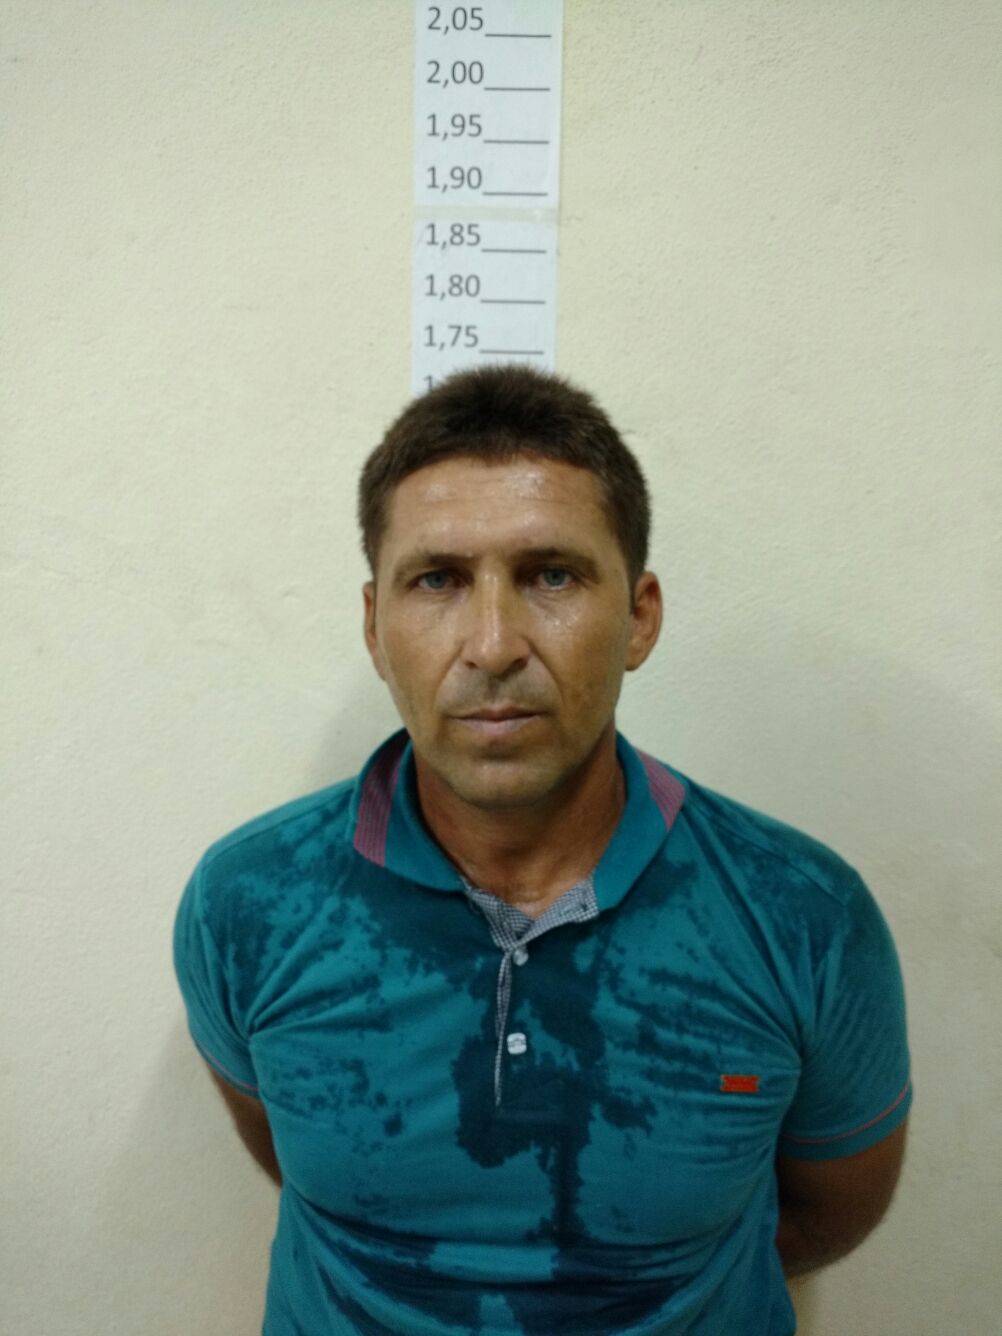 Joviano Fernandes de Arruda, 37 anos.